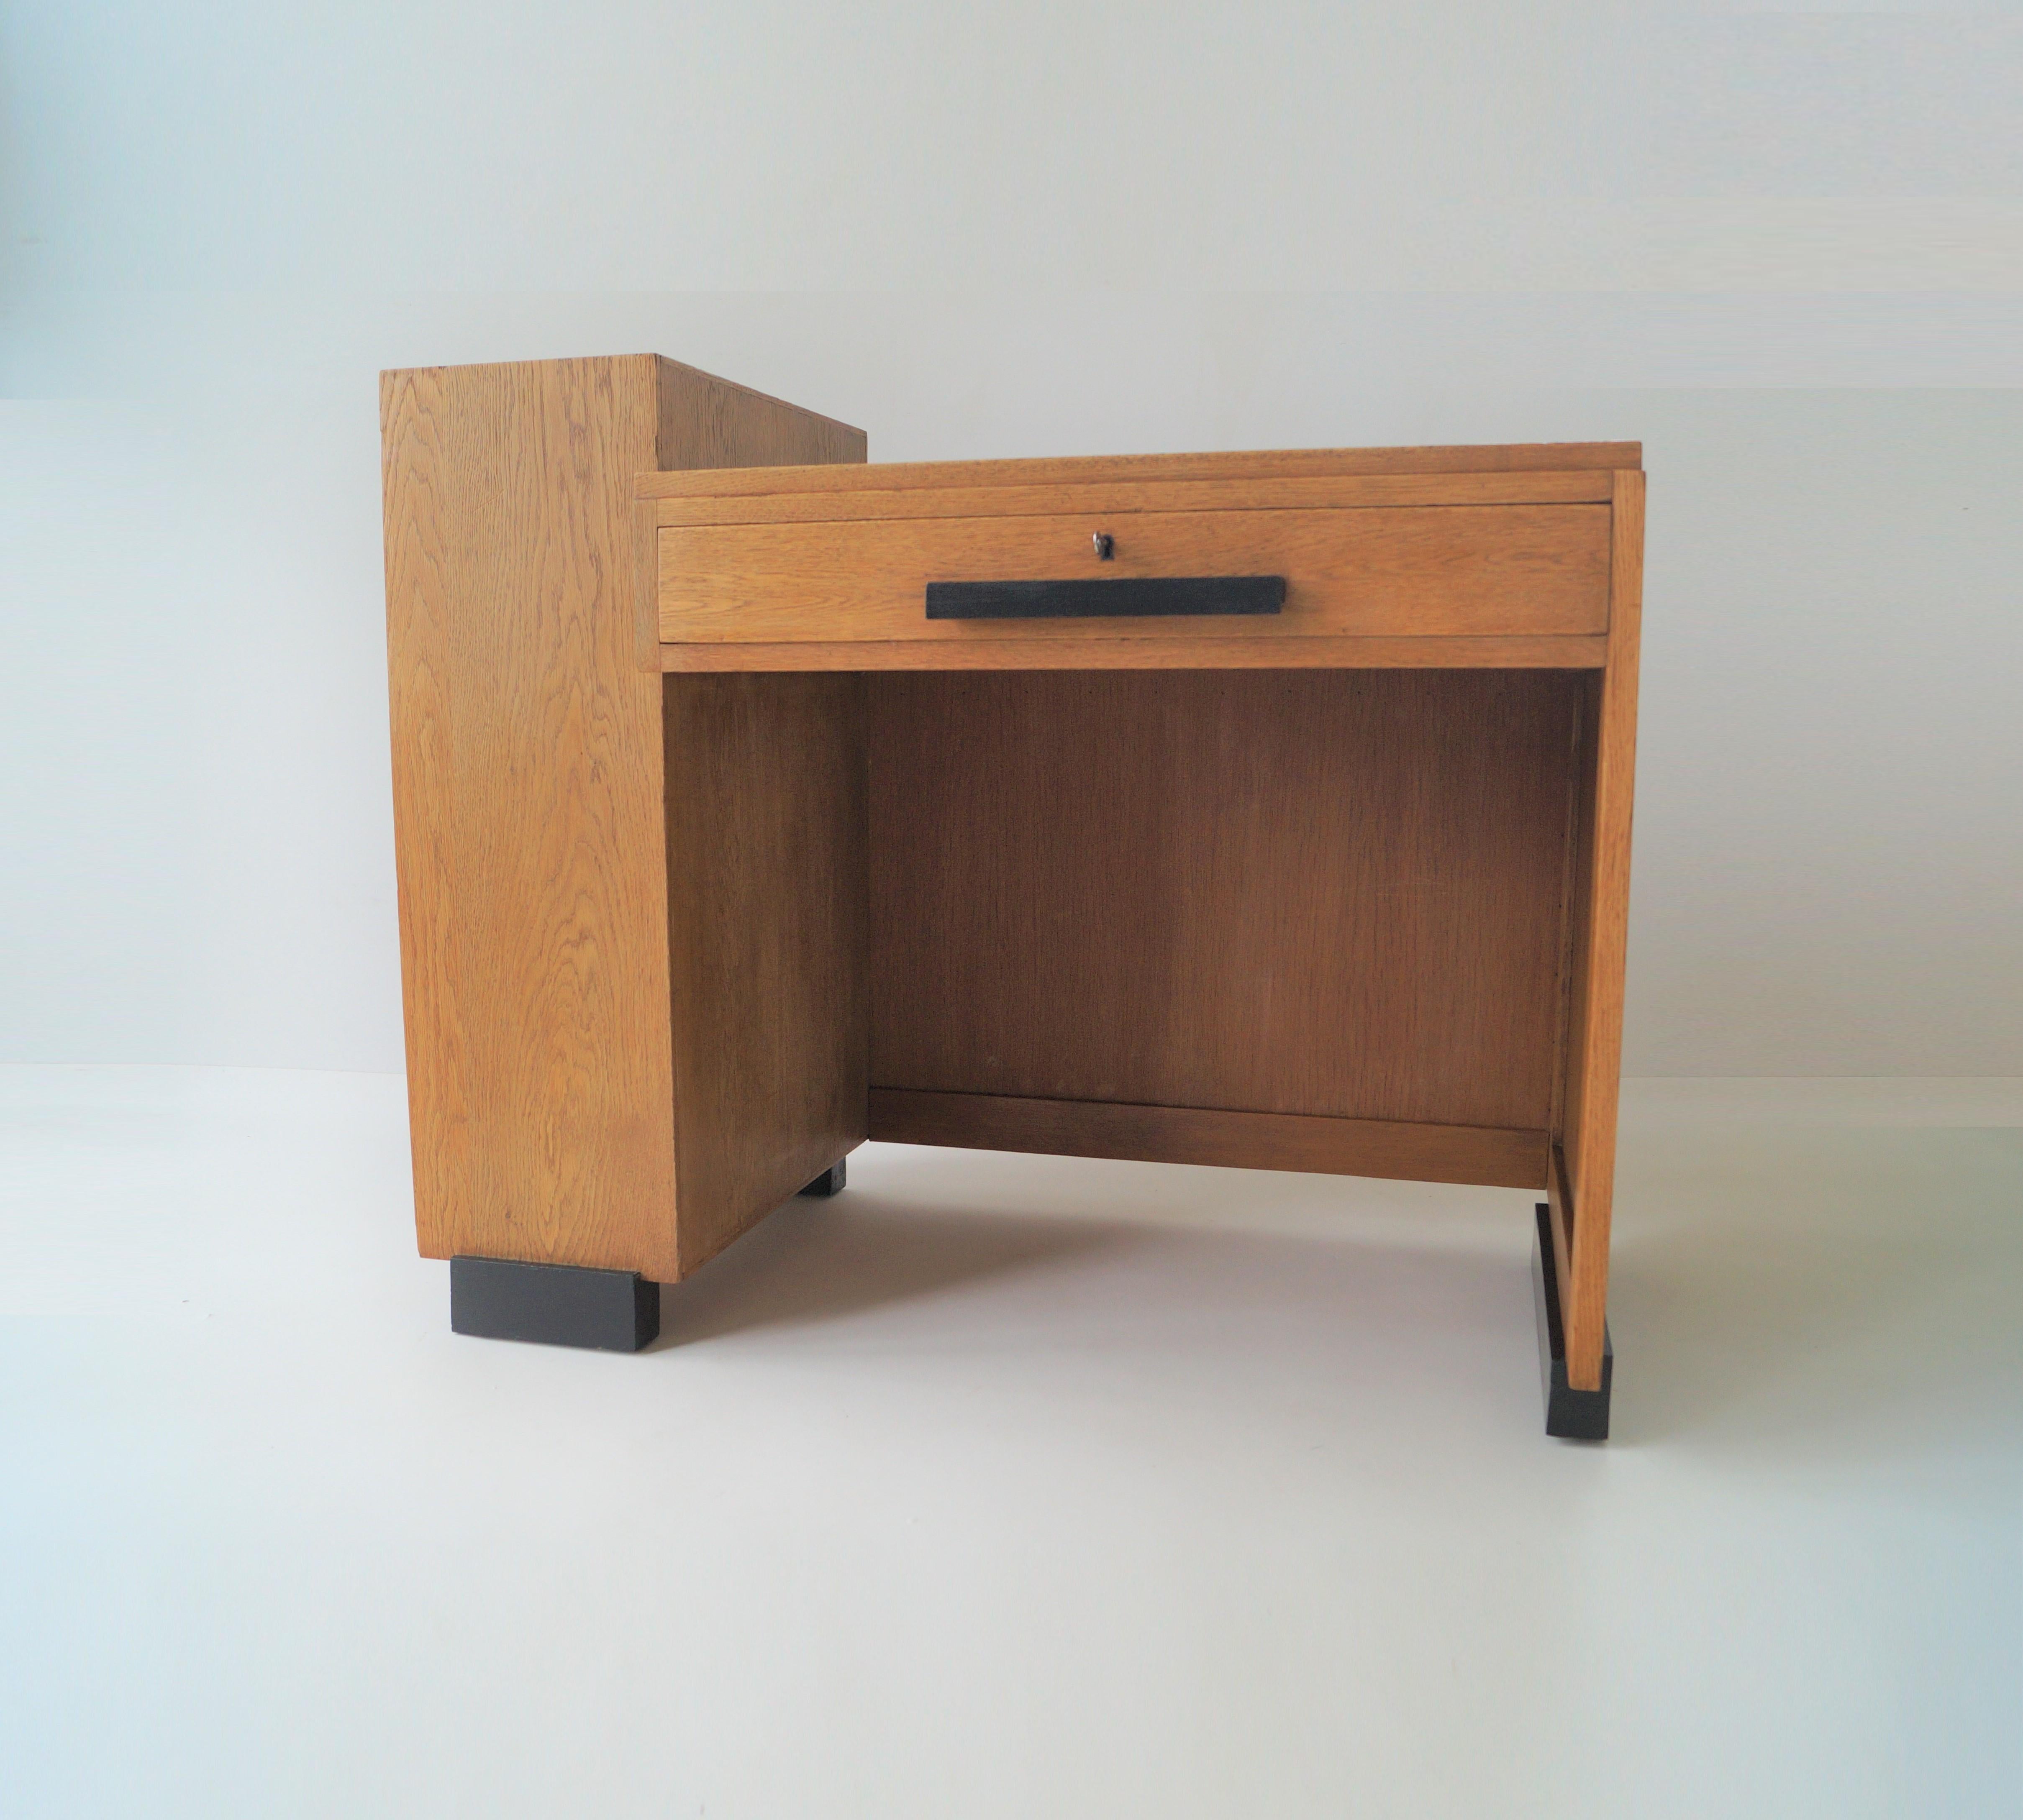 Ein bescheidener modernistischer Schreibtisch mit einem assymetrischen Design, das ihm ein Haagse School/modernistisches Aussehen verleiht.

Es hat eine große Schublade an der Vorderseite und ein Ablagefach mit drei Fächern an der linken Seite. Auf